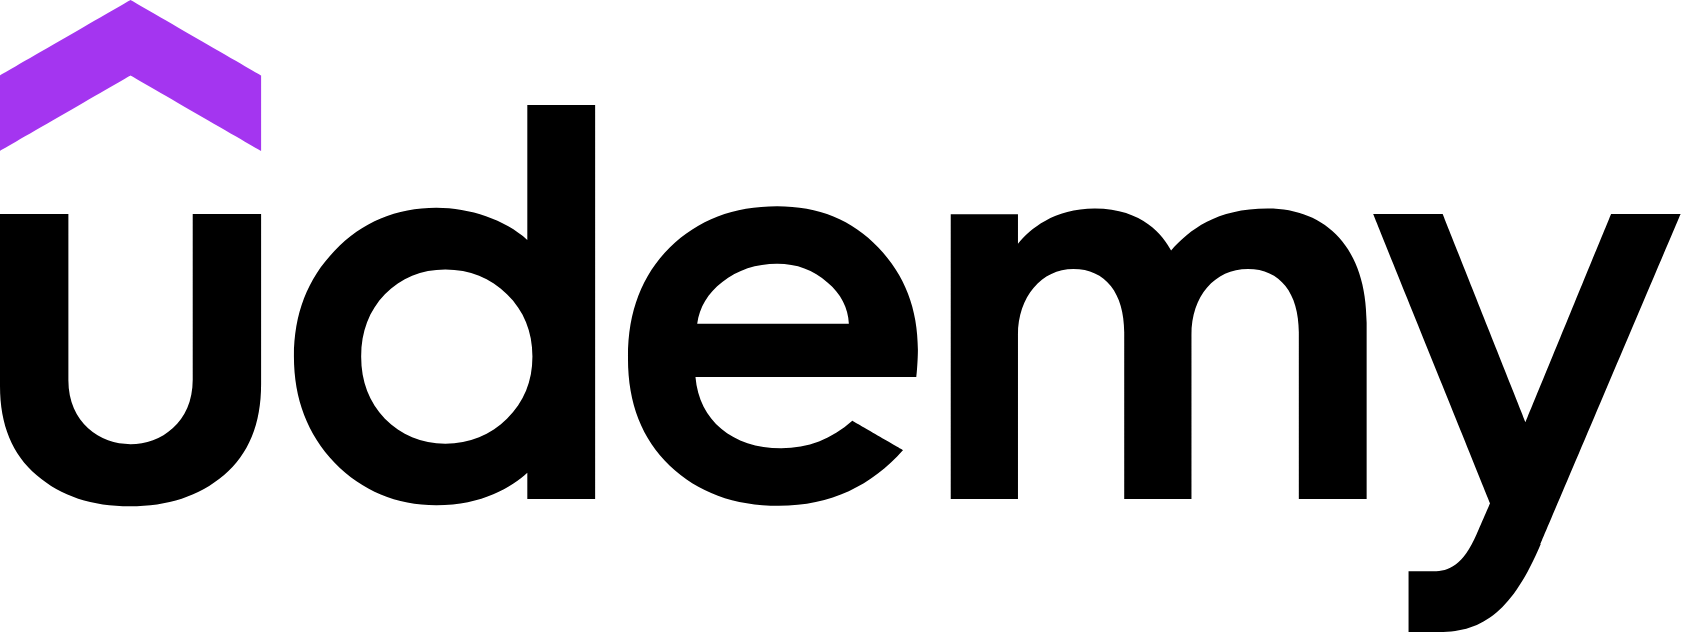 Udemy logo large (transparent PNG)